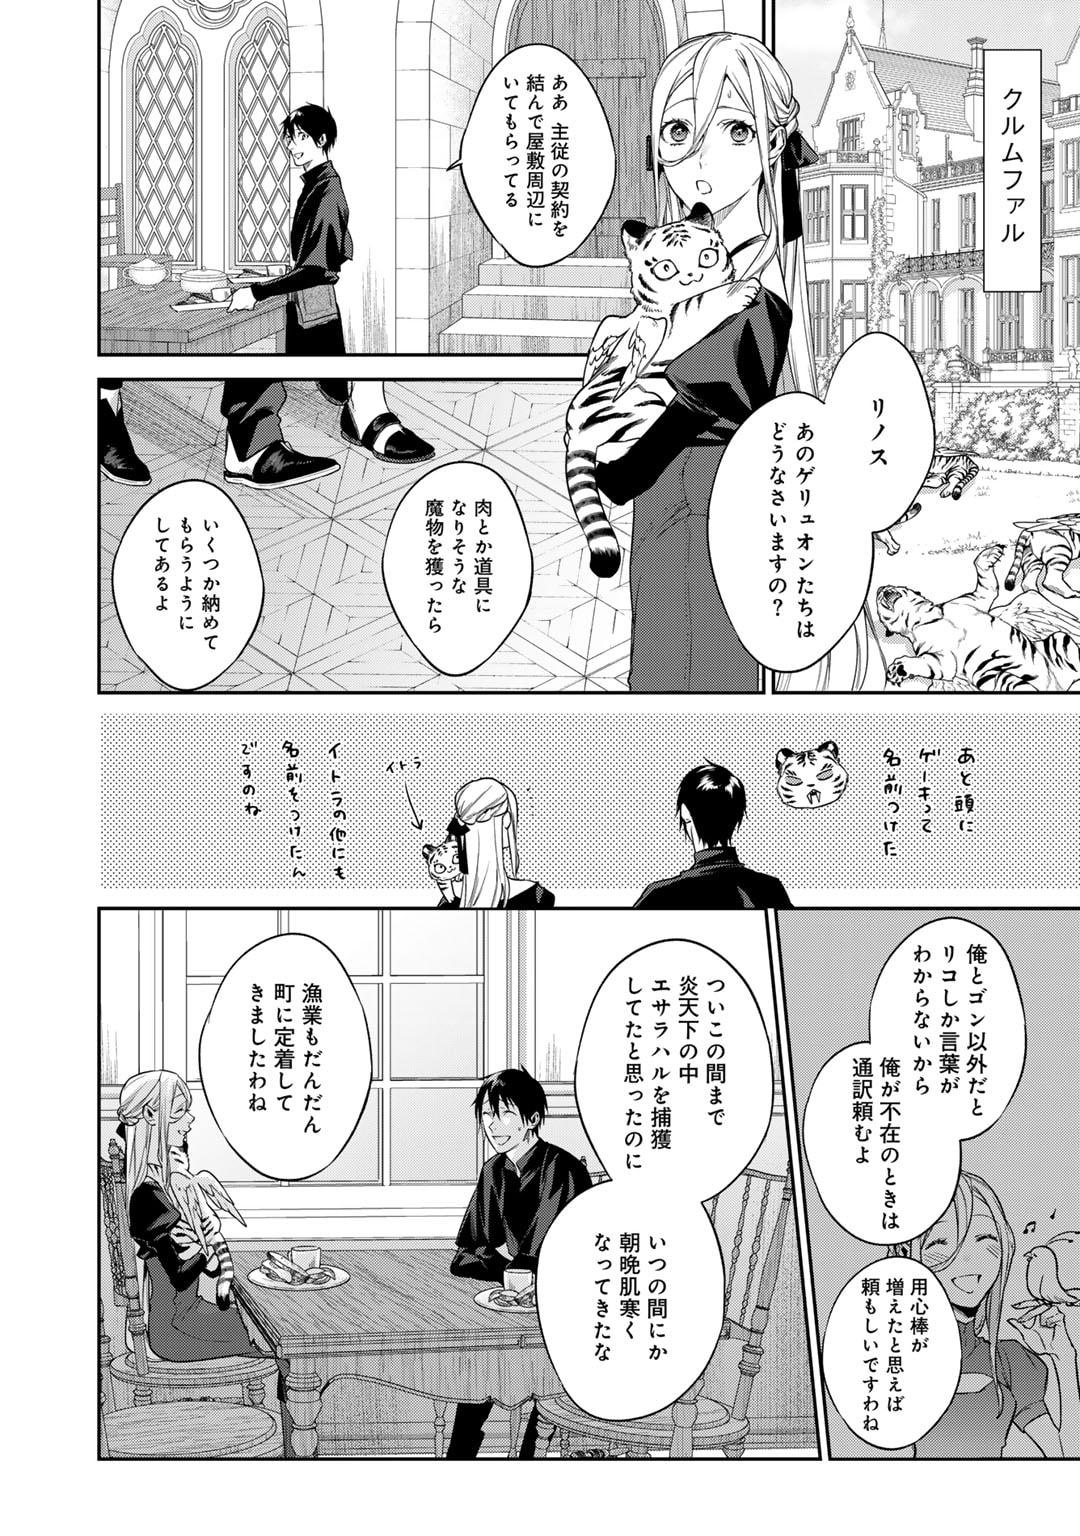 Kekkaishi e no Tensei - Chapter 45 - Page 2